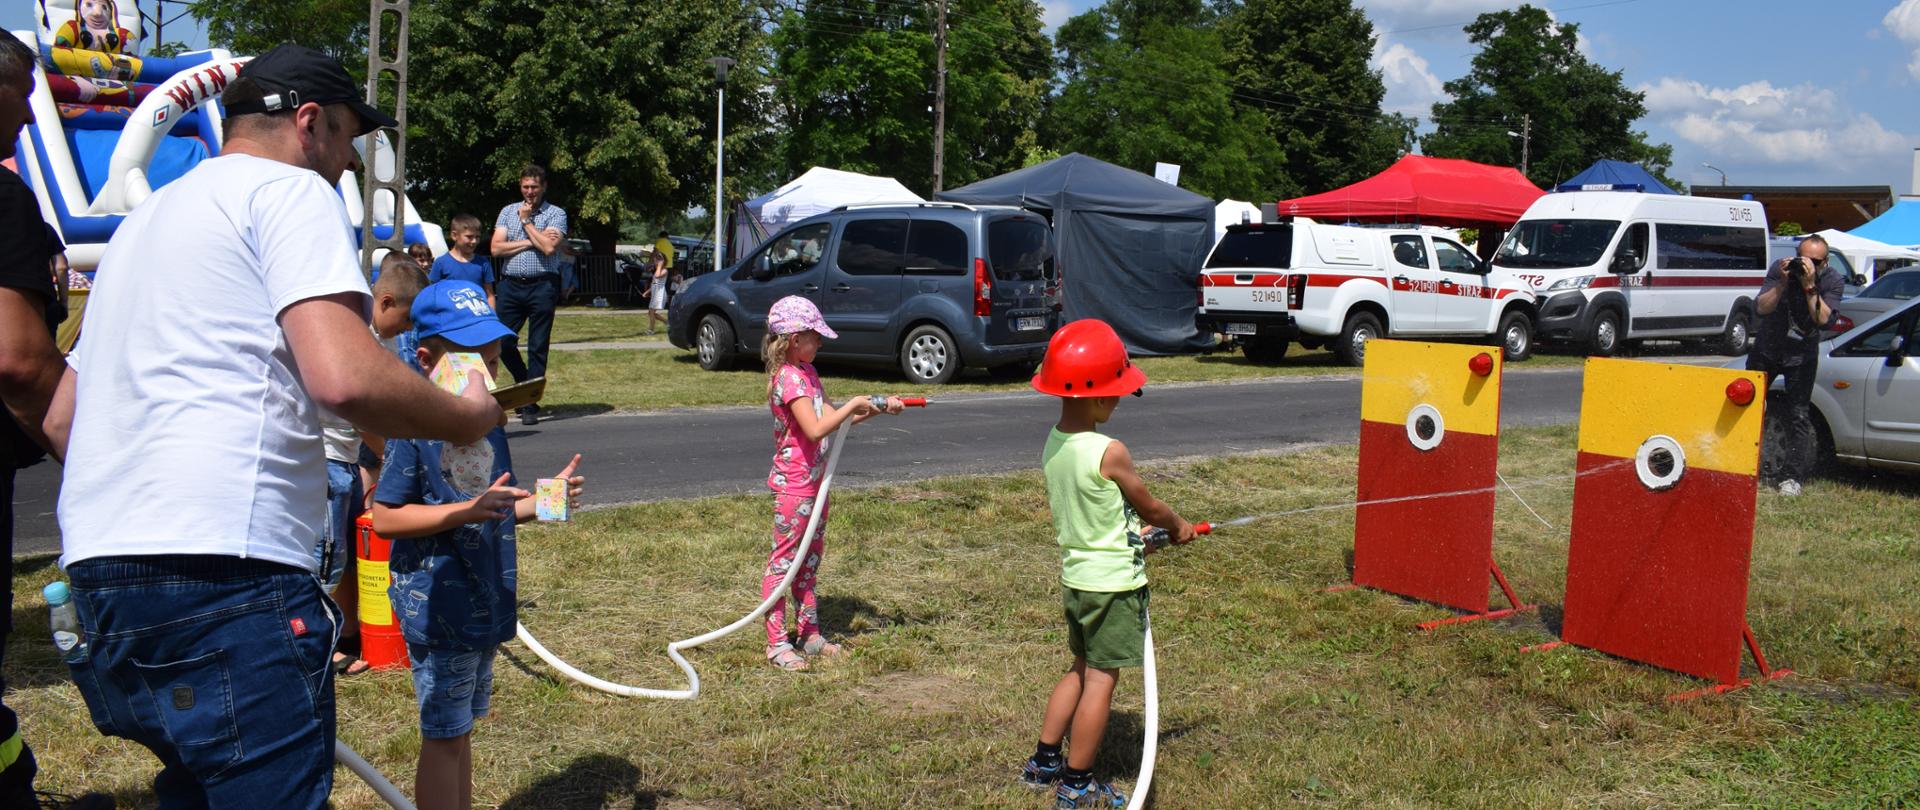 Zdjęcie przedstawia dwójkę dzieci ( chłopca i dziewczynkę ) trzymających małe węże z wodą i celujące w tablicę. Dookoła widać samochody oraz namioty z rozstawionymi stoiskami, dmuchańce do zjeżdżania oraz ludzi.